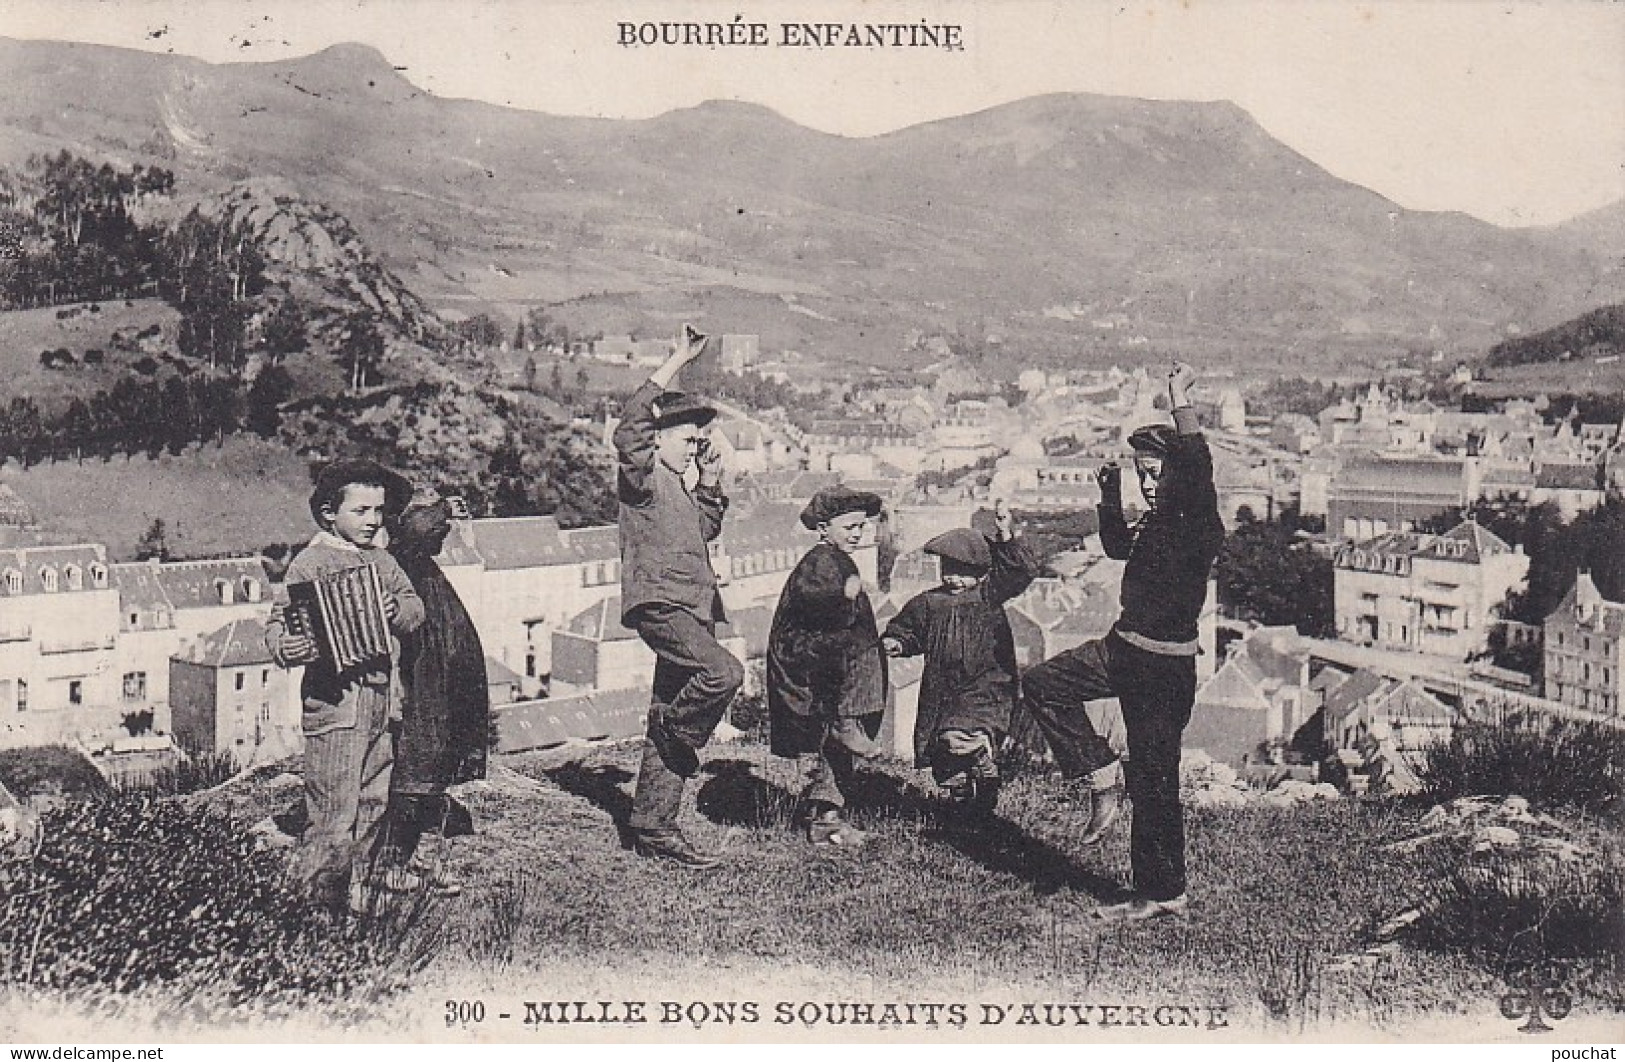 Z+ Nw- MILLE BONS SOUHAITS D'AUVERGNE - BOURREE ENFANTINE - Auvergne